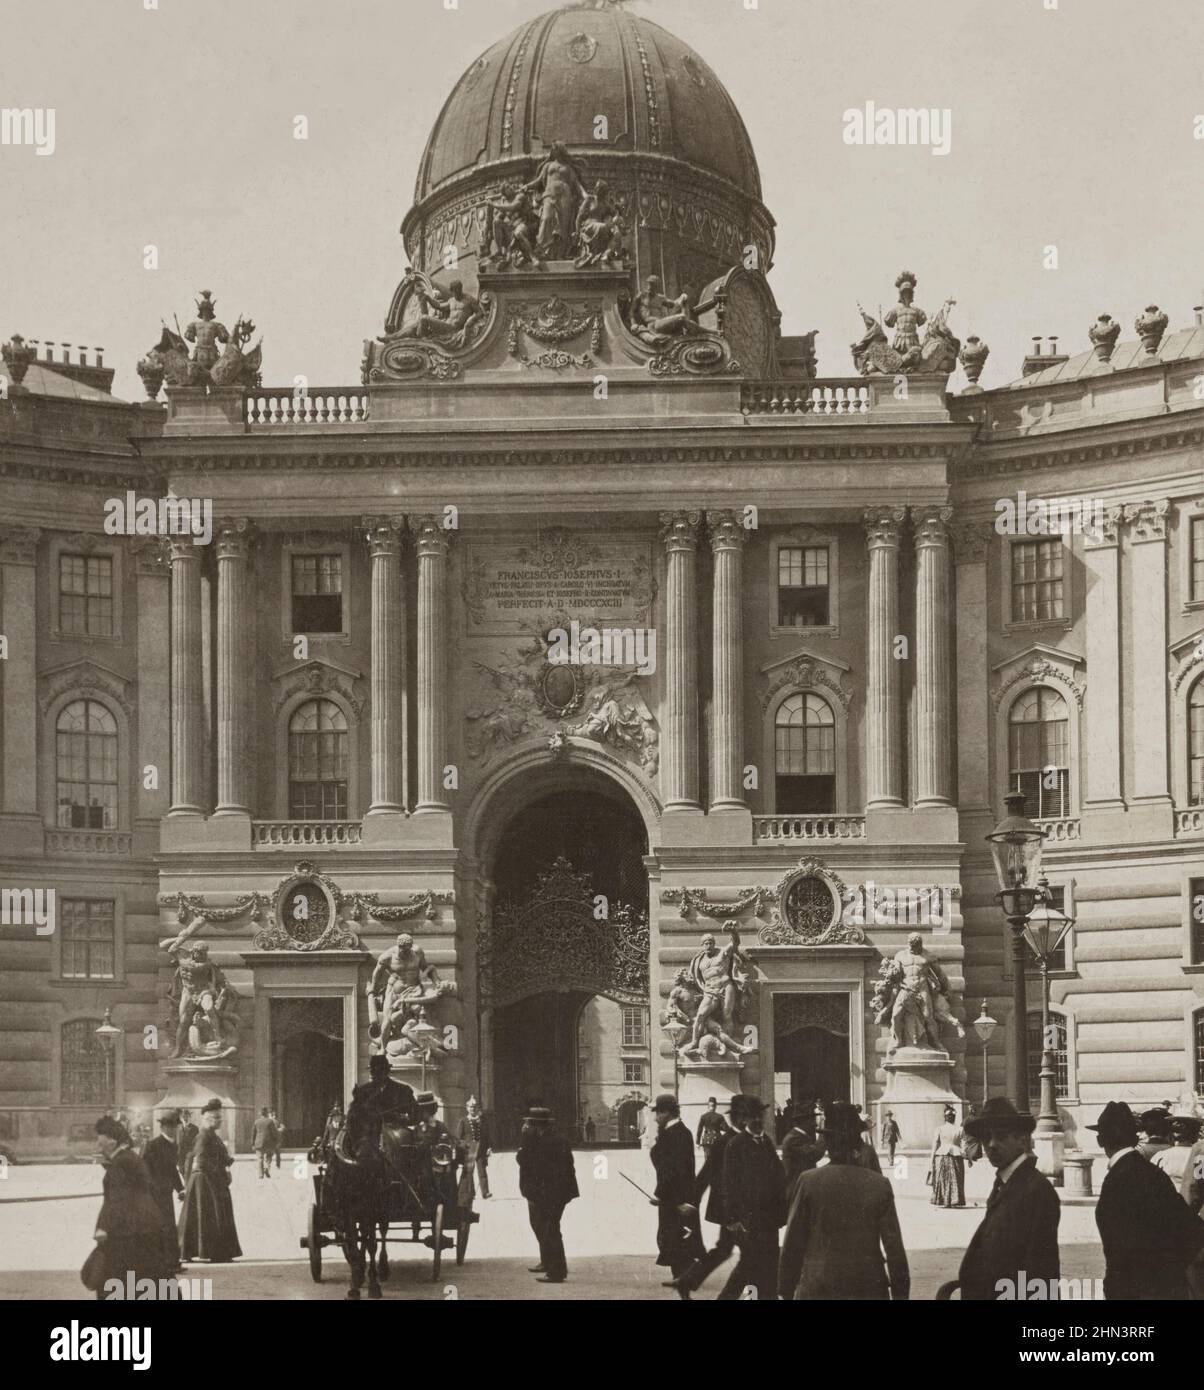 Photo d'époque de l'entrée du Palais impérial. Vienne, Autriche. 1902 Banque D'Images